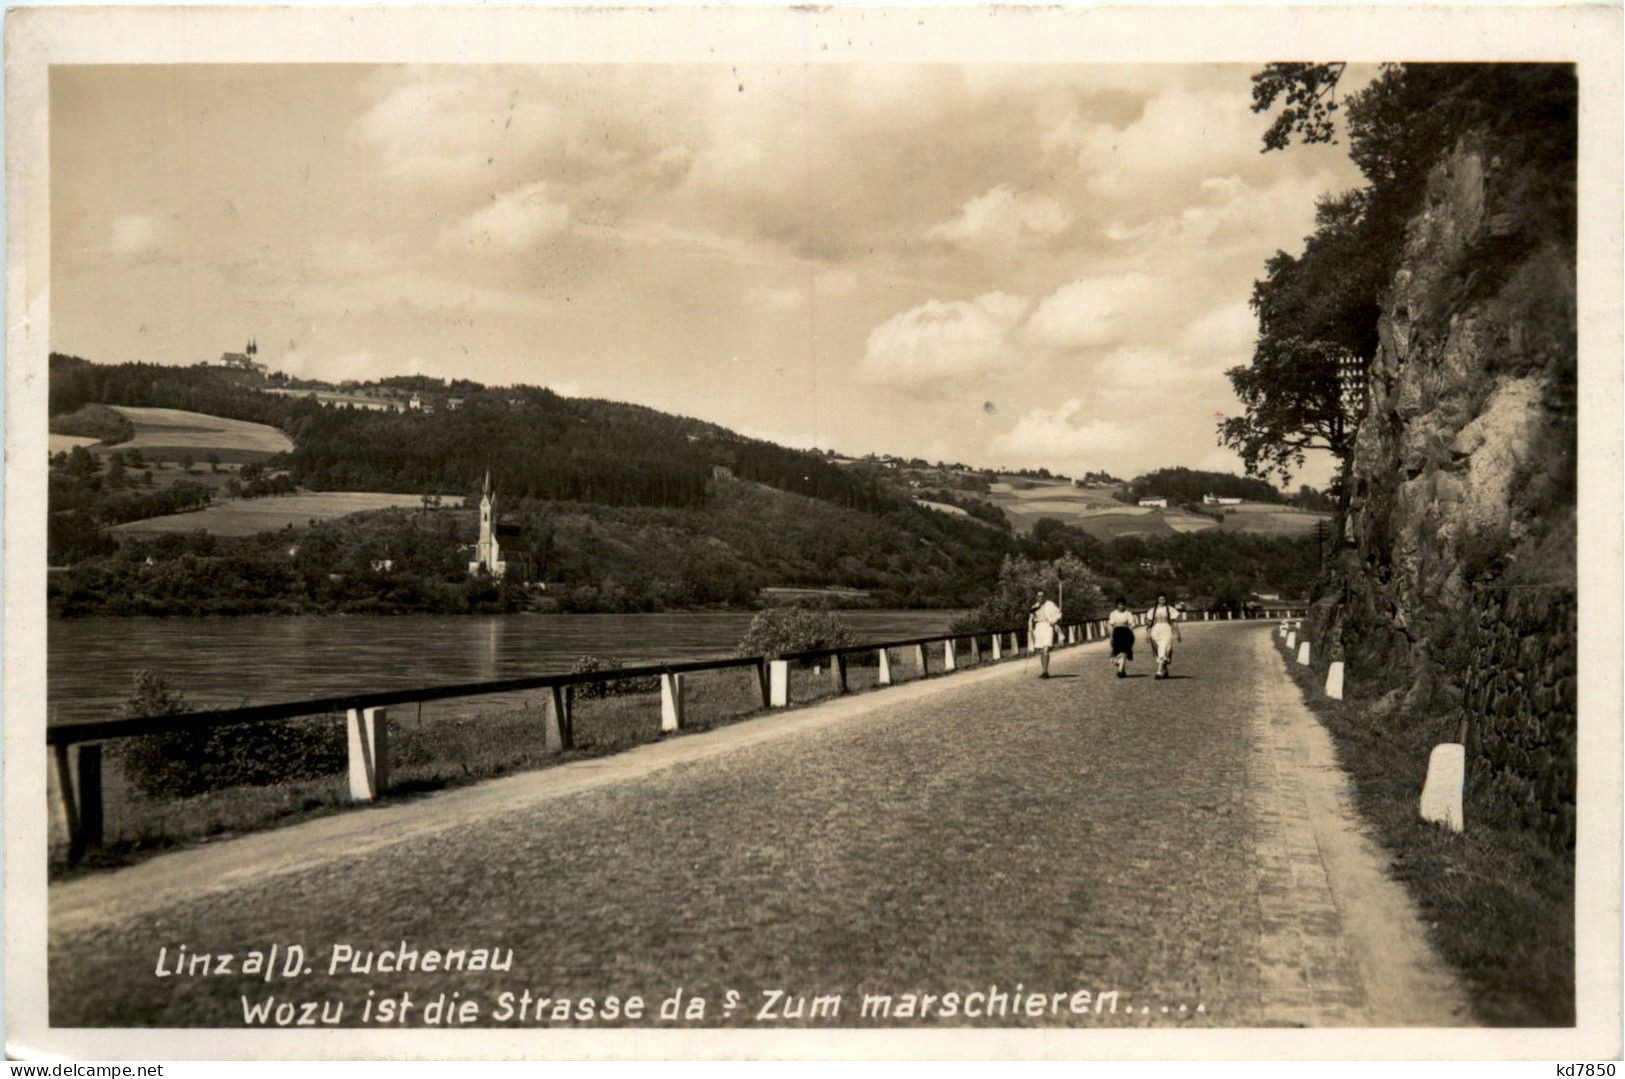 Linz Puchenau - Linz